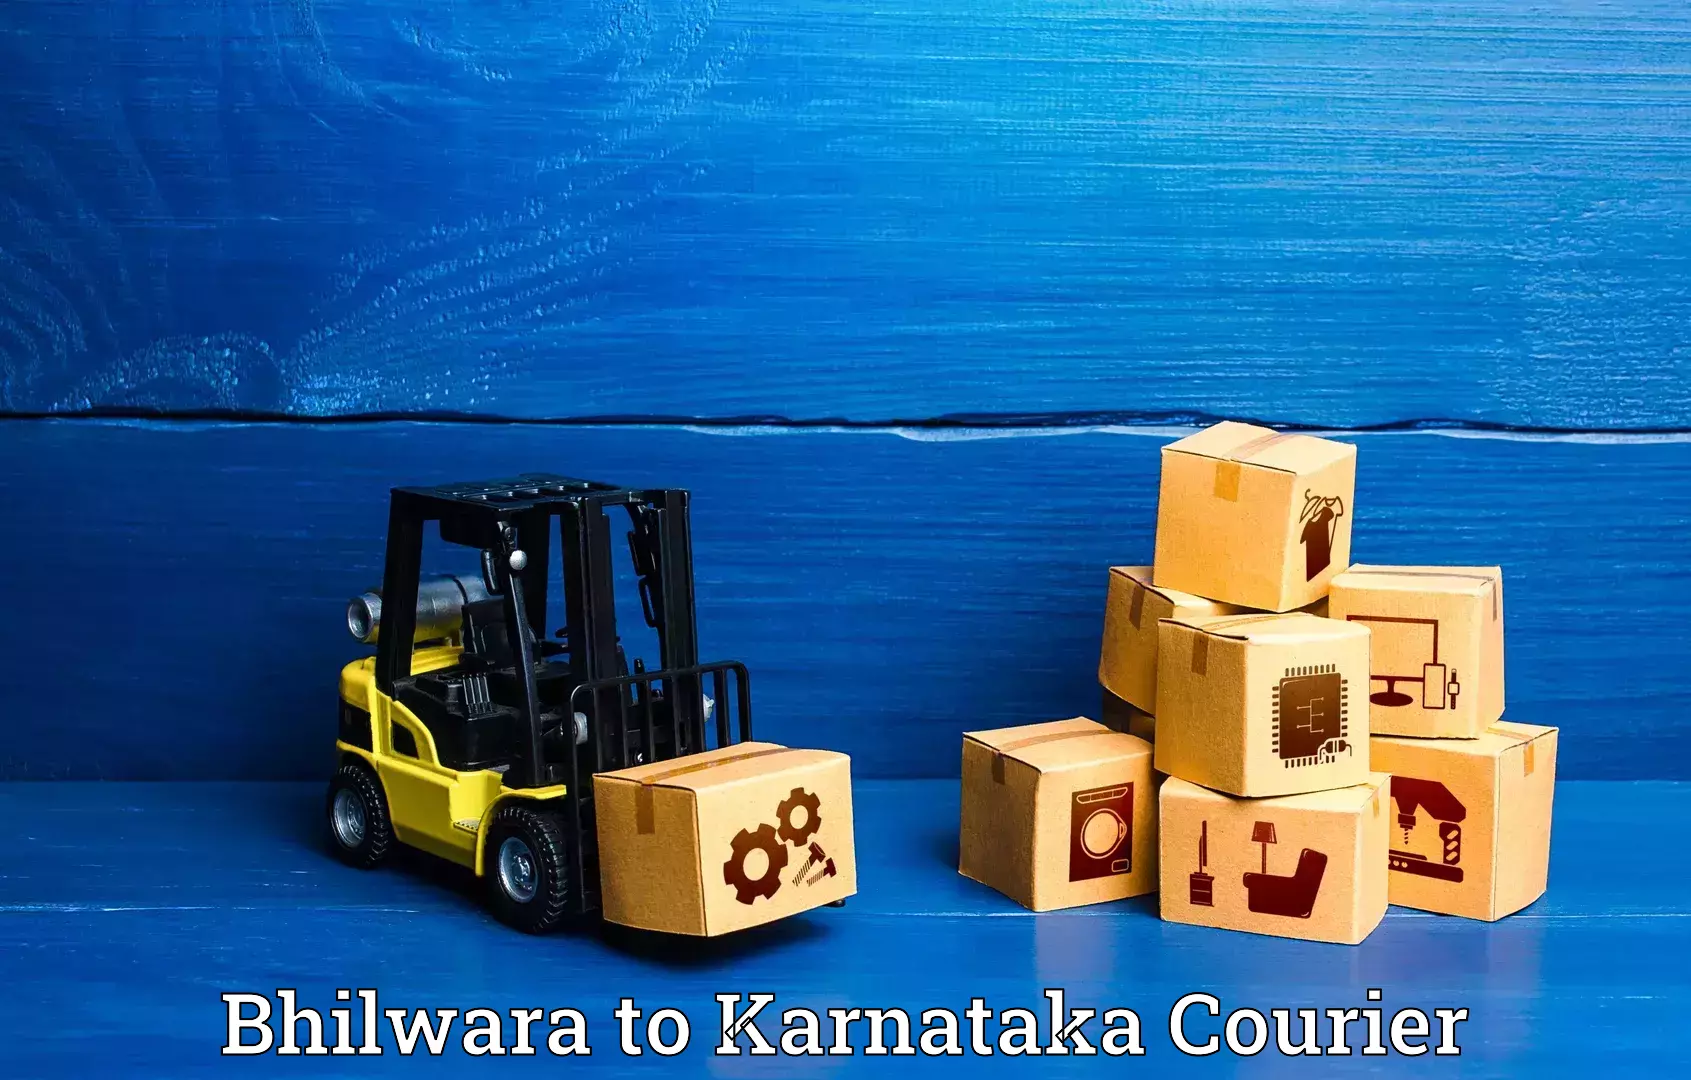 Baggage transport logistics Bhilwara to Karnataka